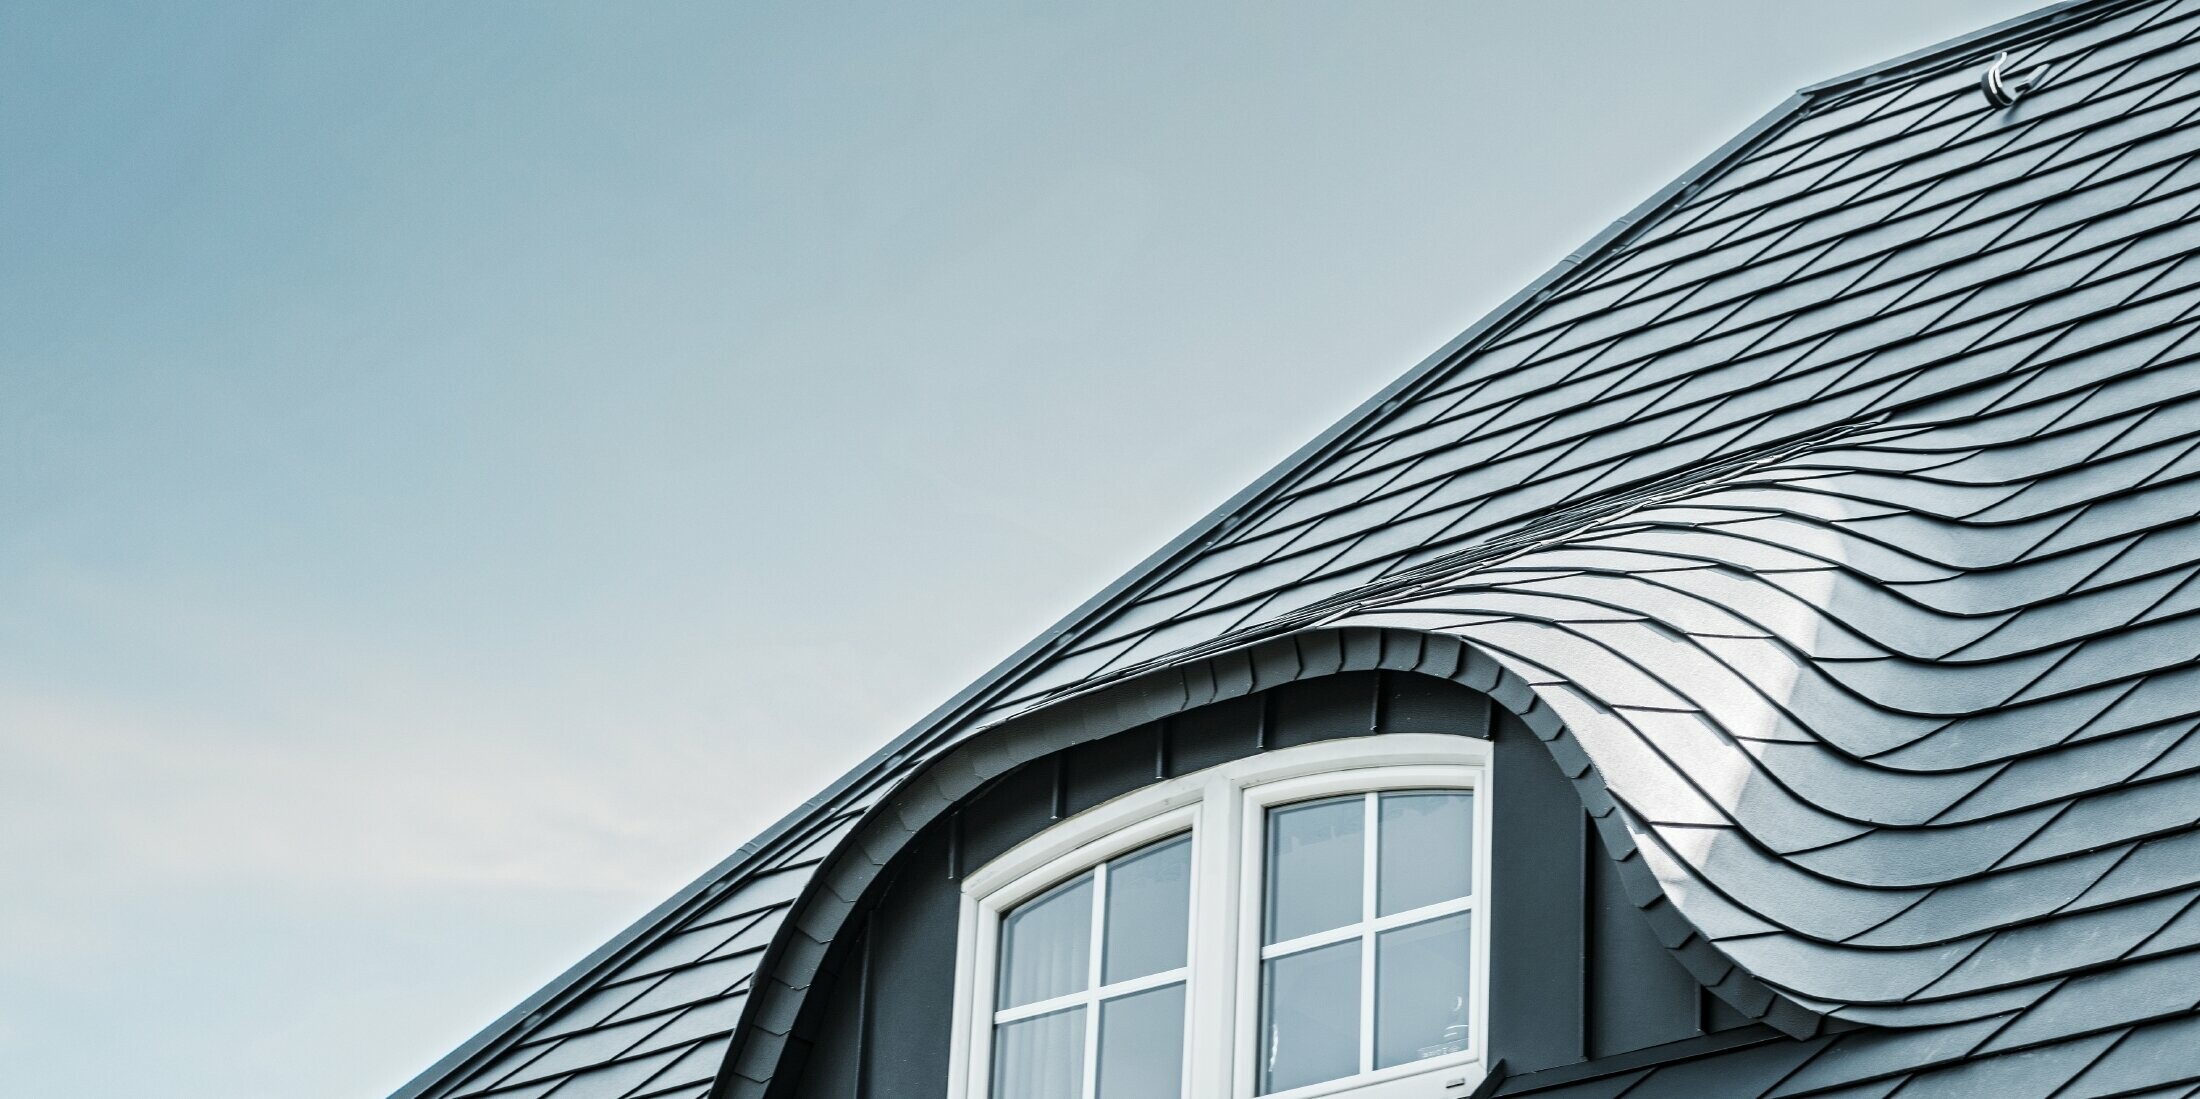 Gerenoveerd dak met gebogen dakkapel met raam, bekleed met aluminium schindels van PREFA in P.10 antraciet 